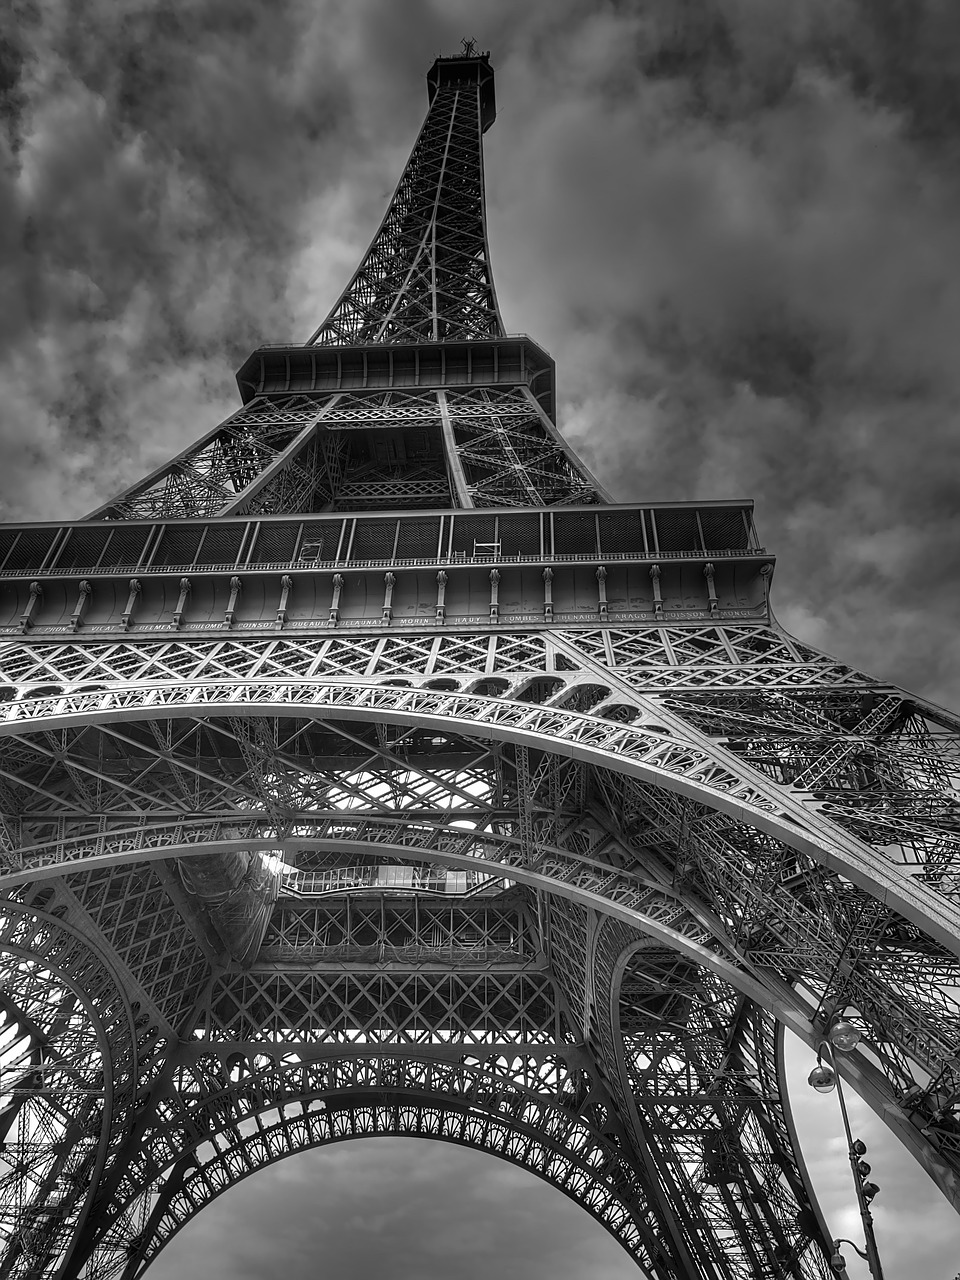 Malownicza Francja – przewodnik po Paryżu w języku polskim, zwiedzanie